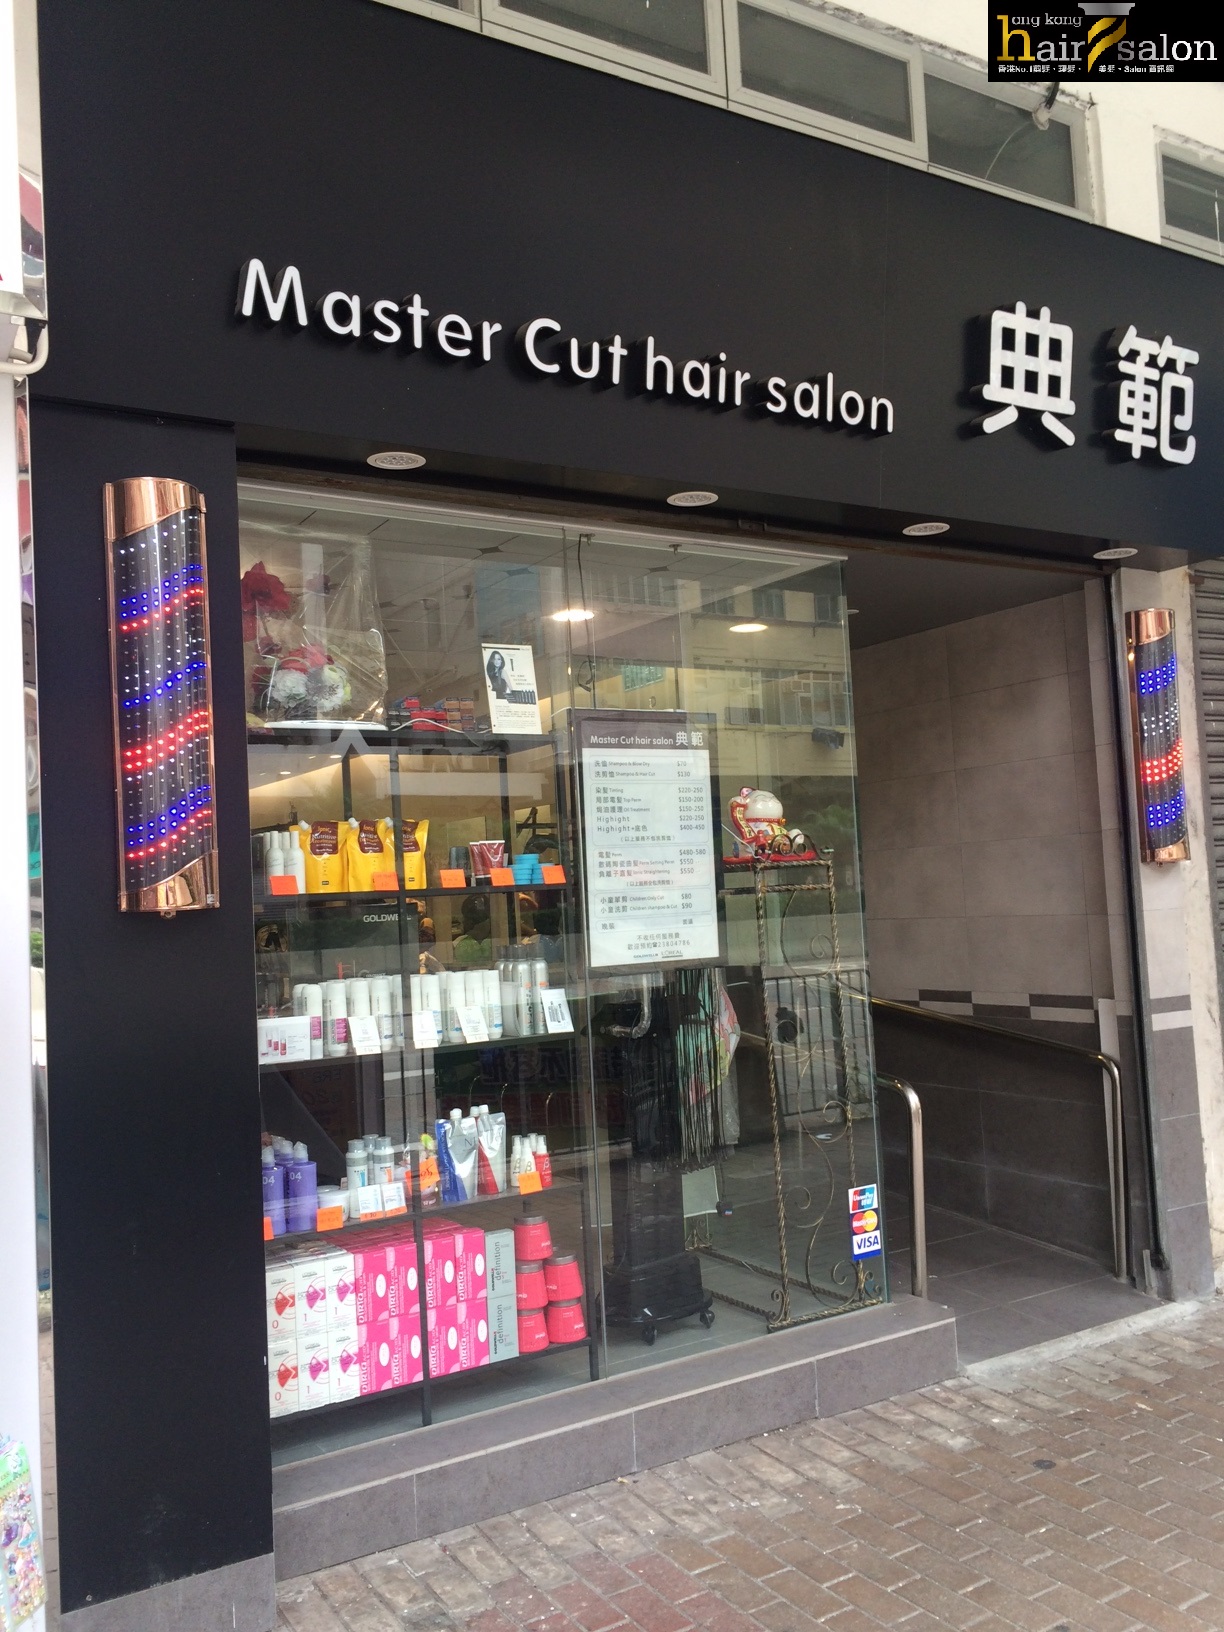 洗剪吹/洗吹造型: 典範 Master Cut Hair Salon